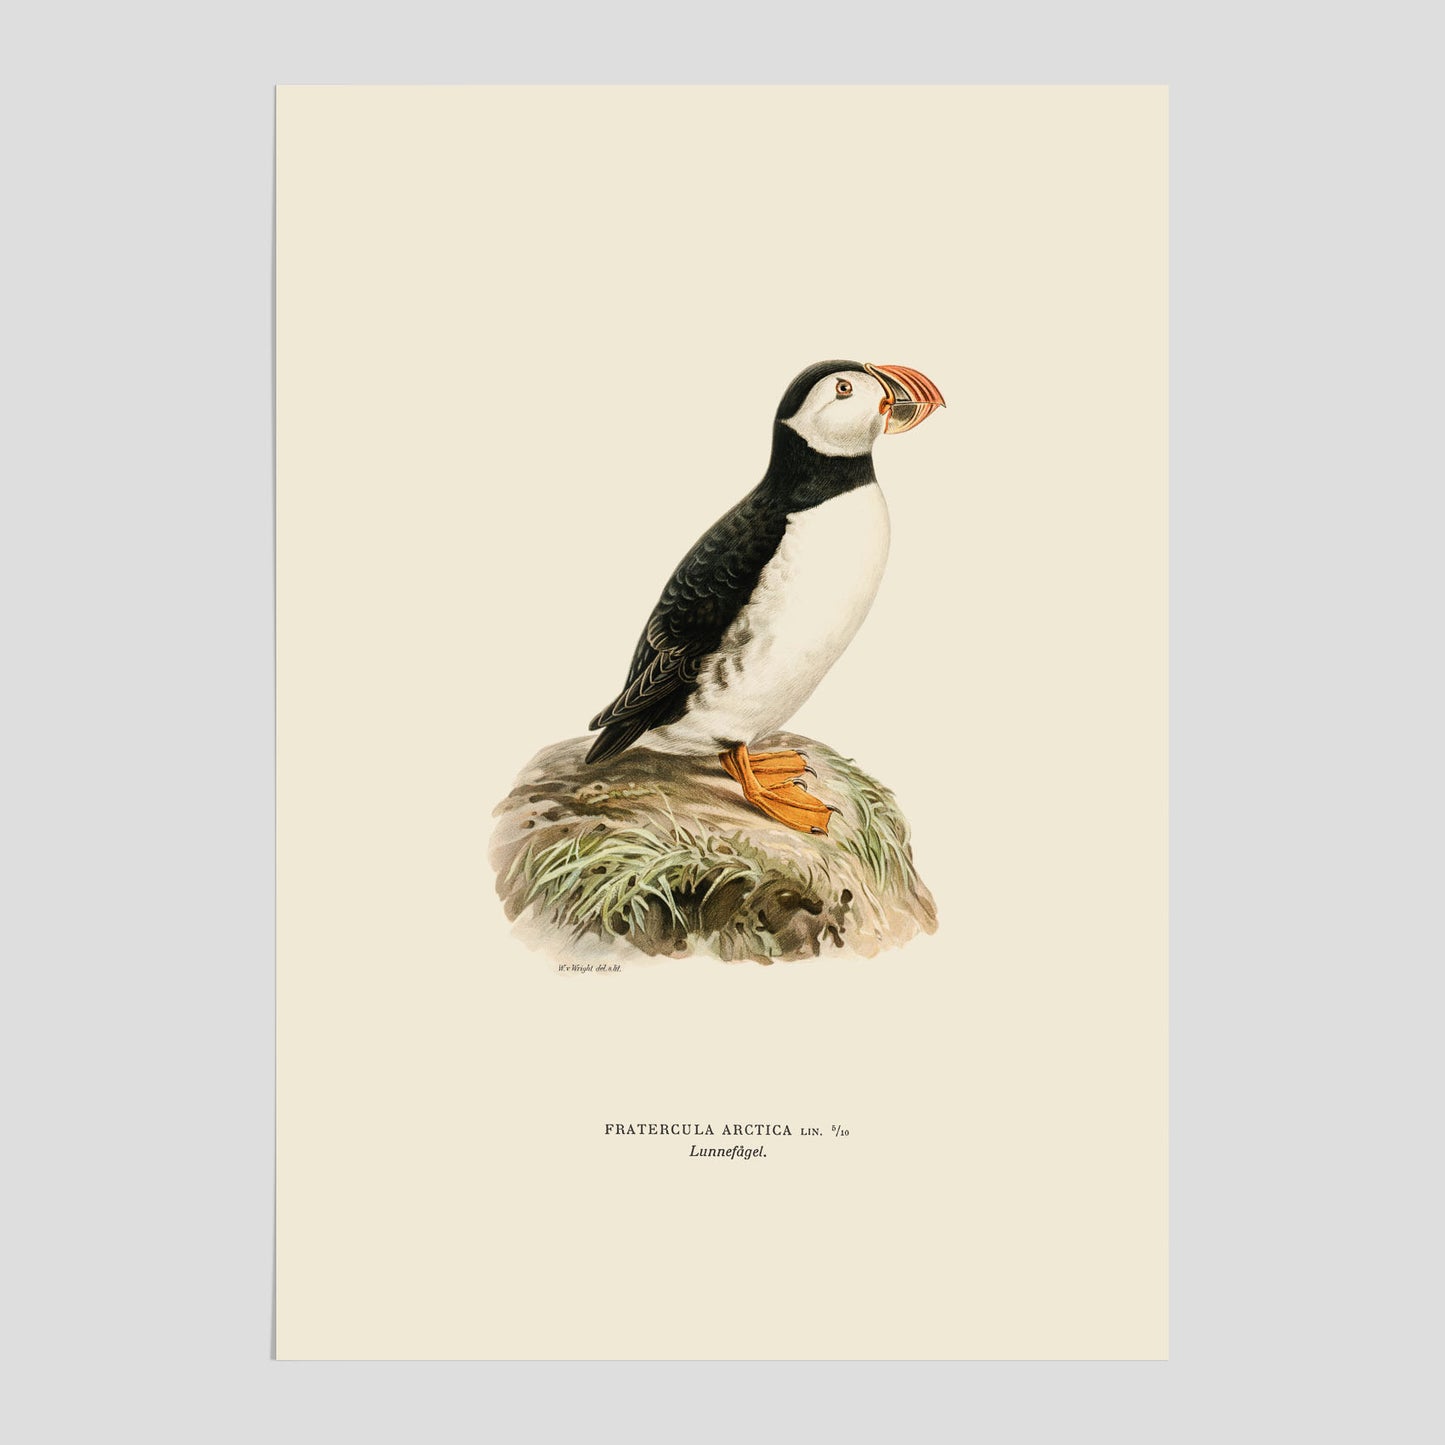 Vintageposter föreställande en lunnefågel, ritad av bröderna von Wright